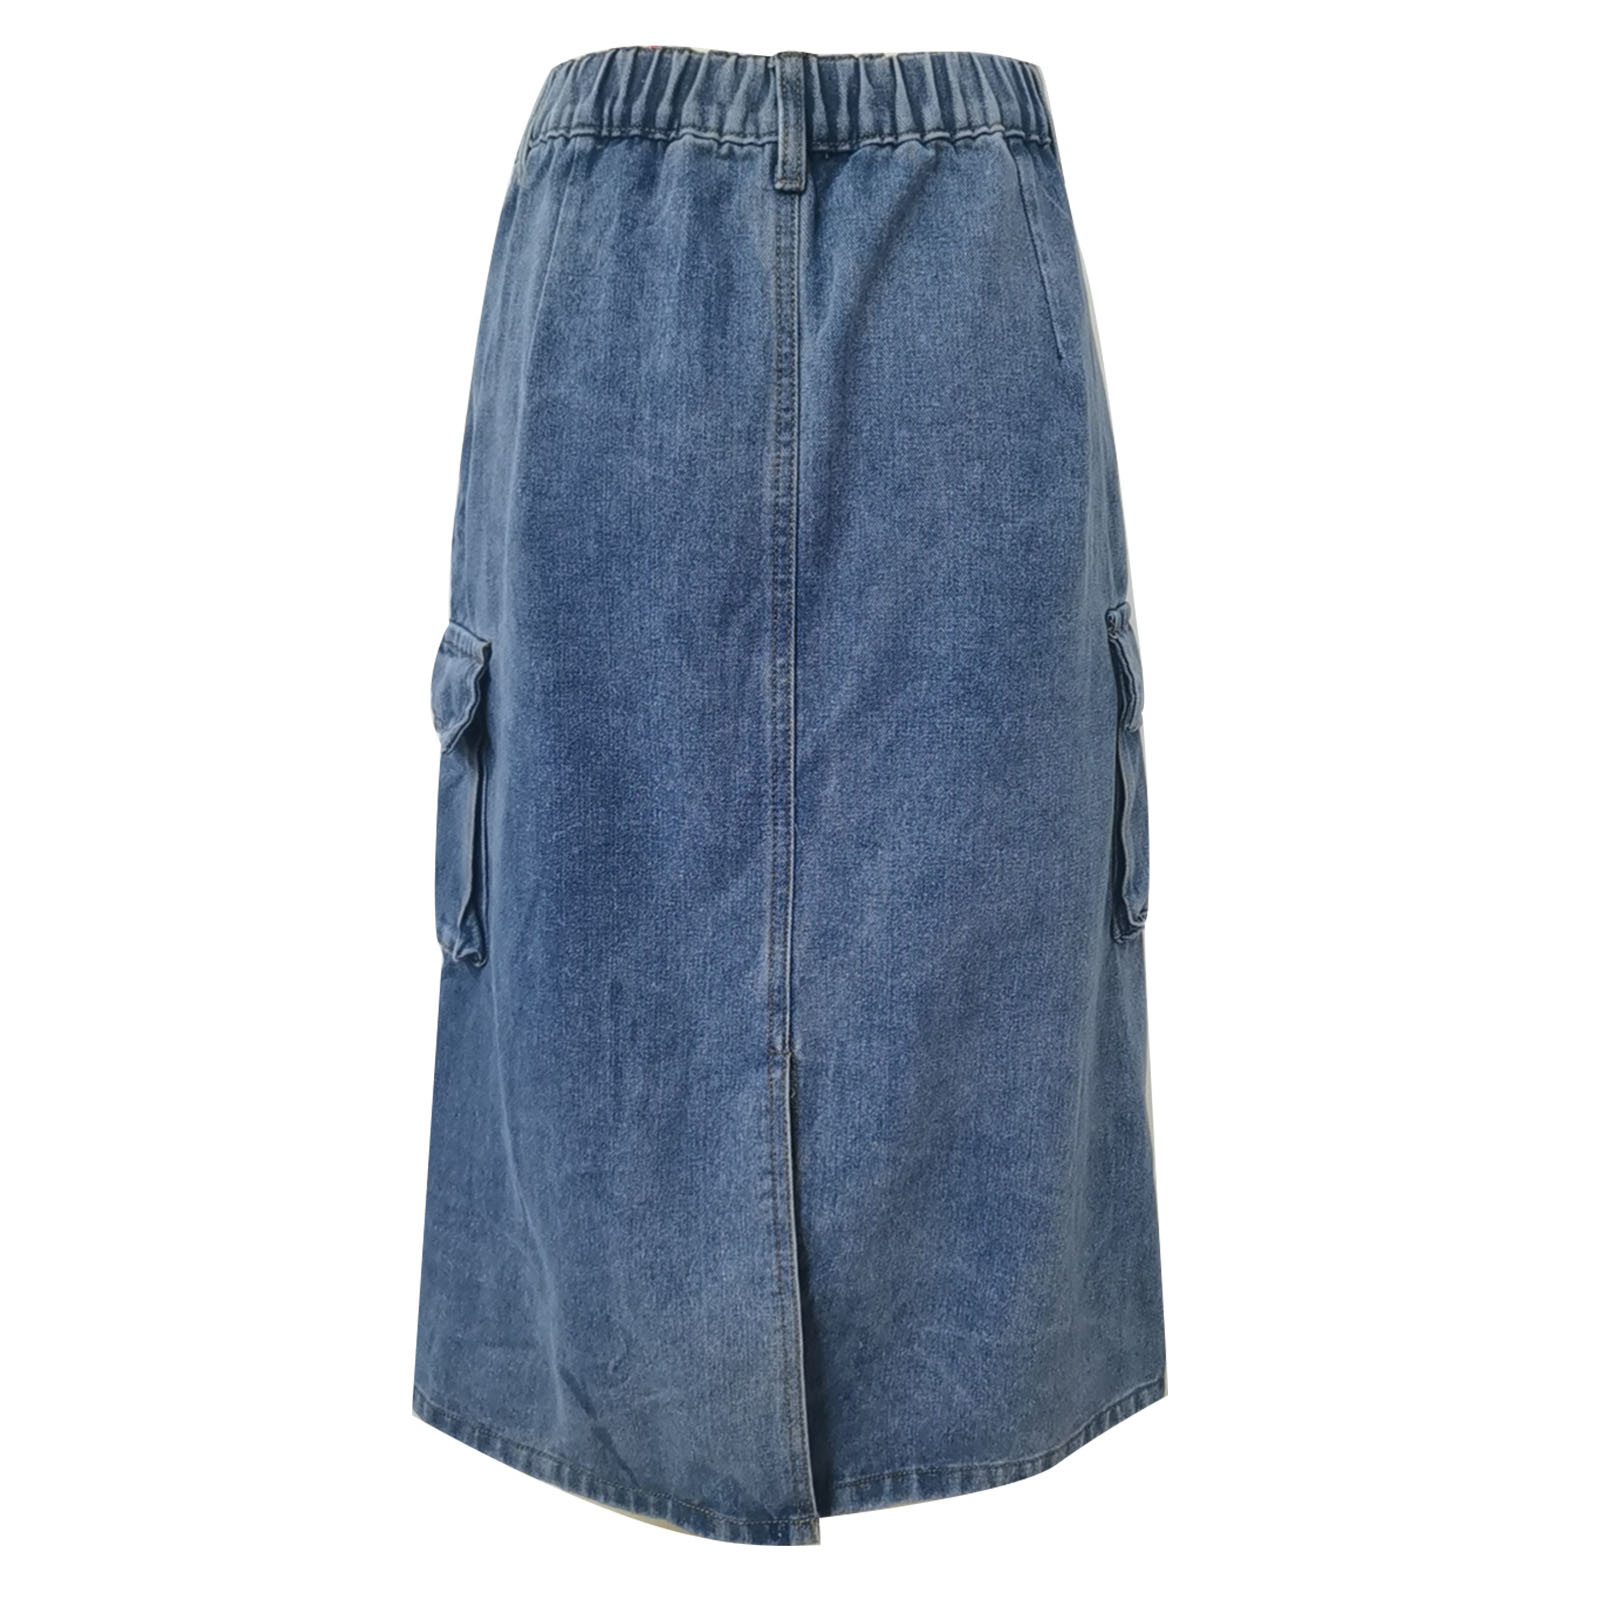 Mitankcoo Women Denim Cargo Long Skirts - High Waisted Pencil Skirt ...